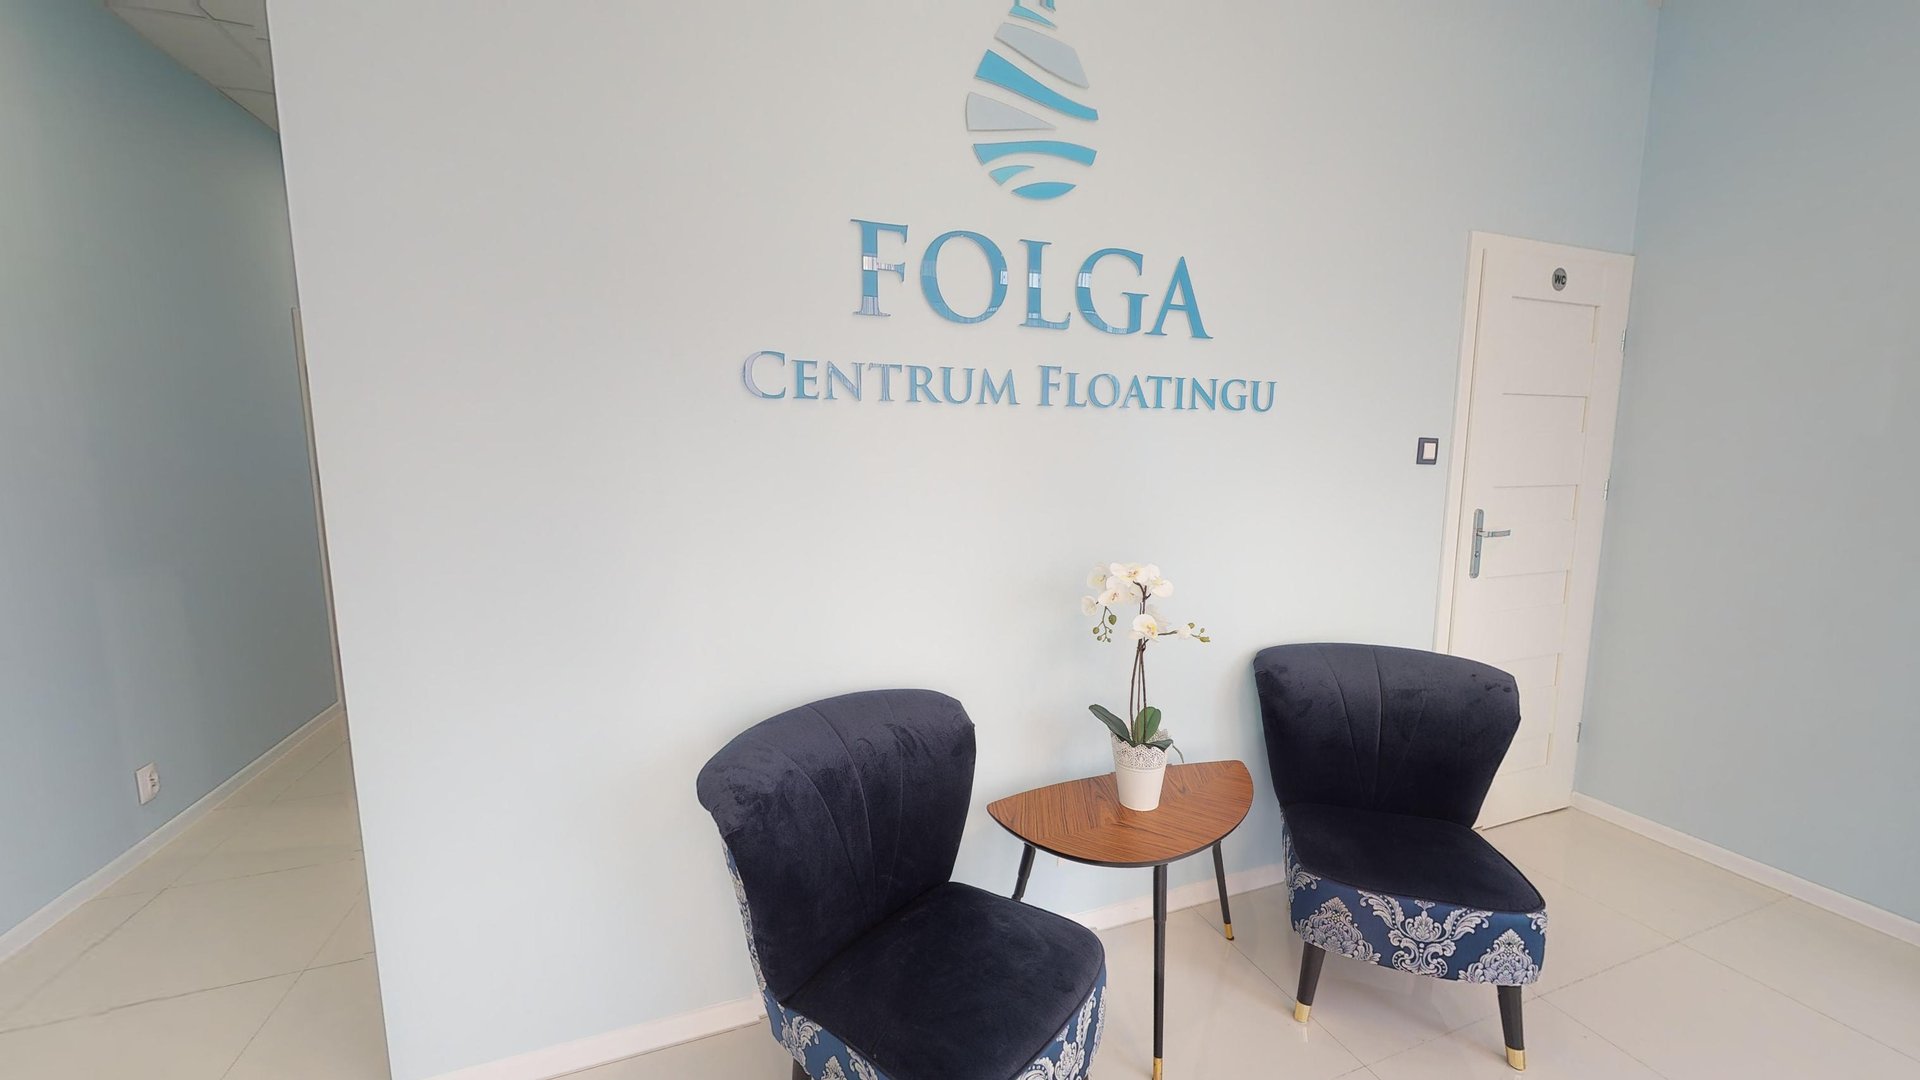 FOLGA Centrum Floatingu